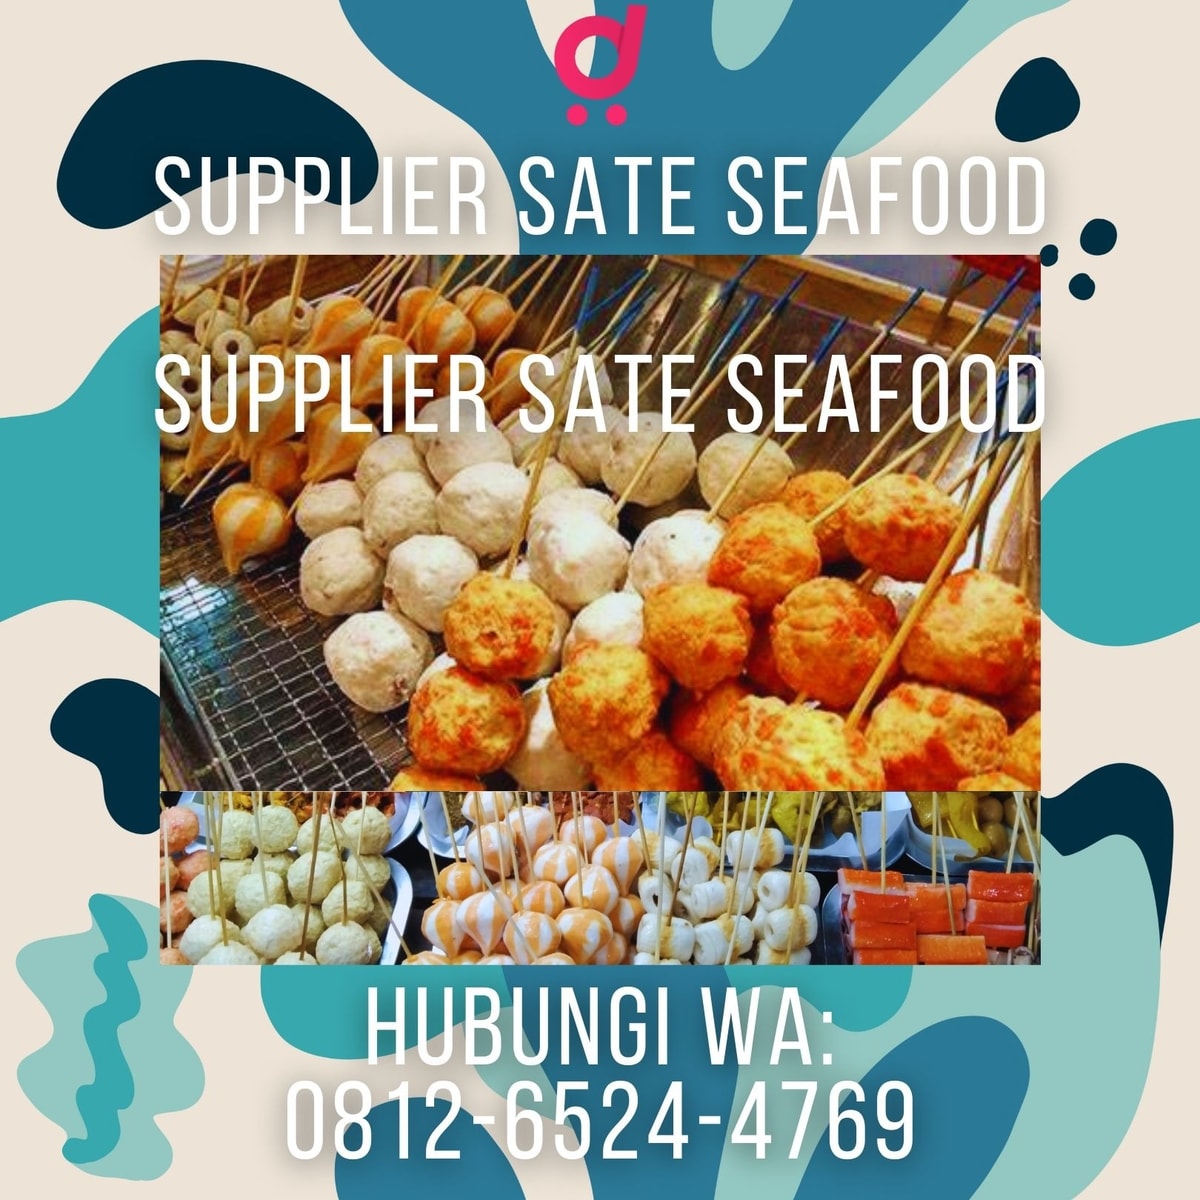 HARGA DISTRIBUTOR, Call 0812-6110-2958, Grosir Sate Seafood di Batahan, Mandailing Natal